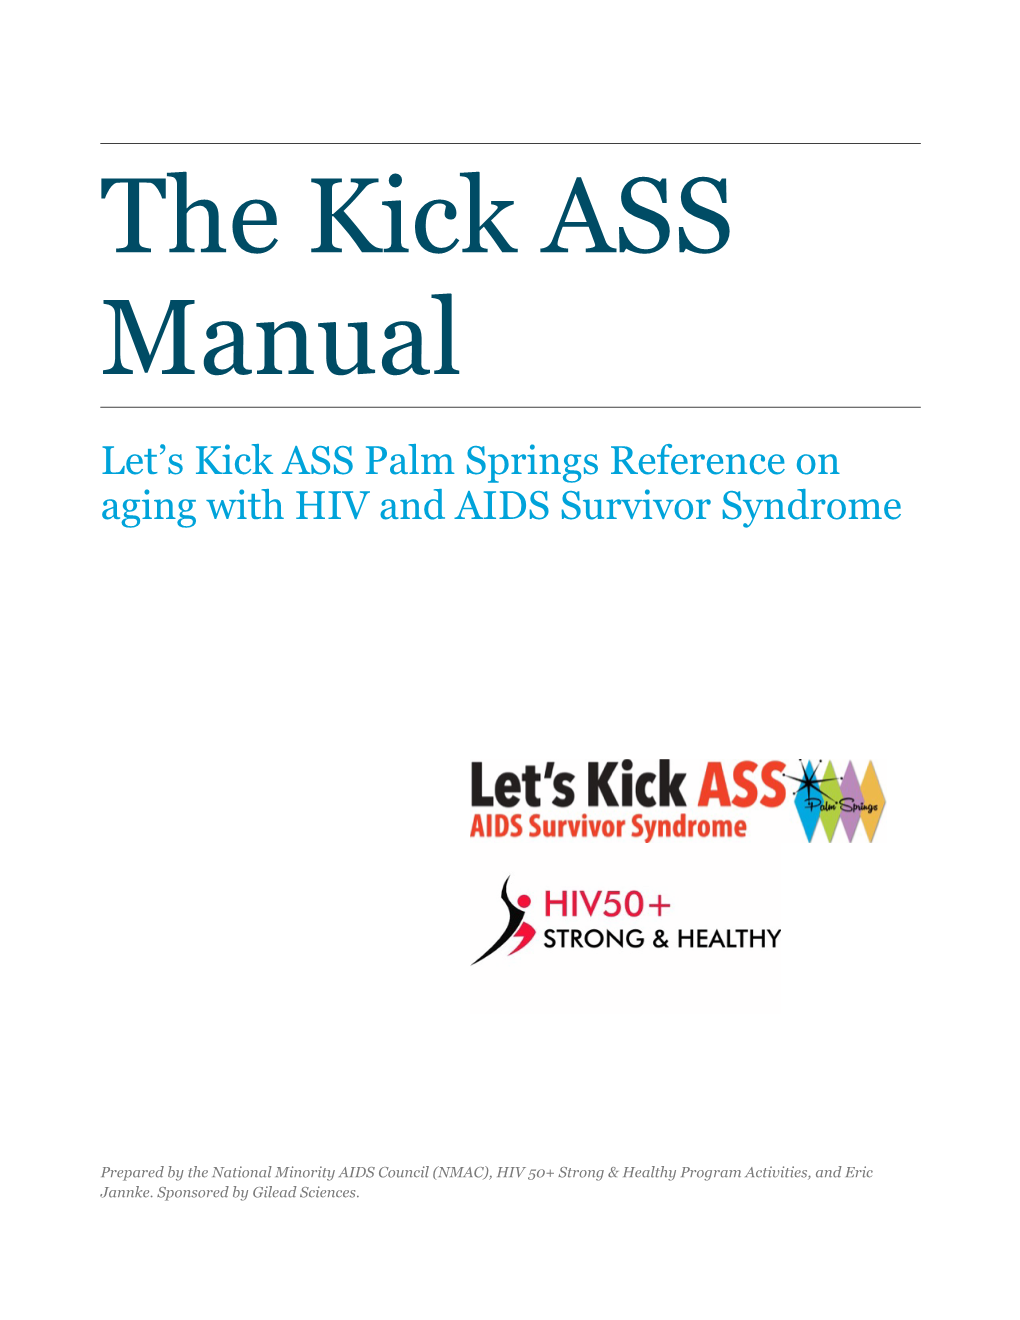 Kick ASS Manual